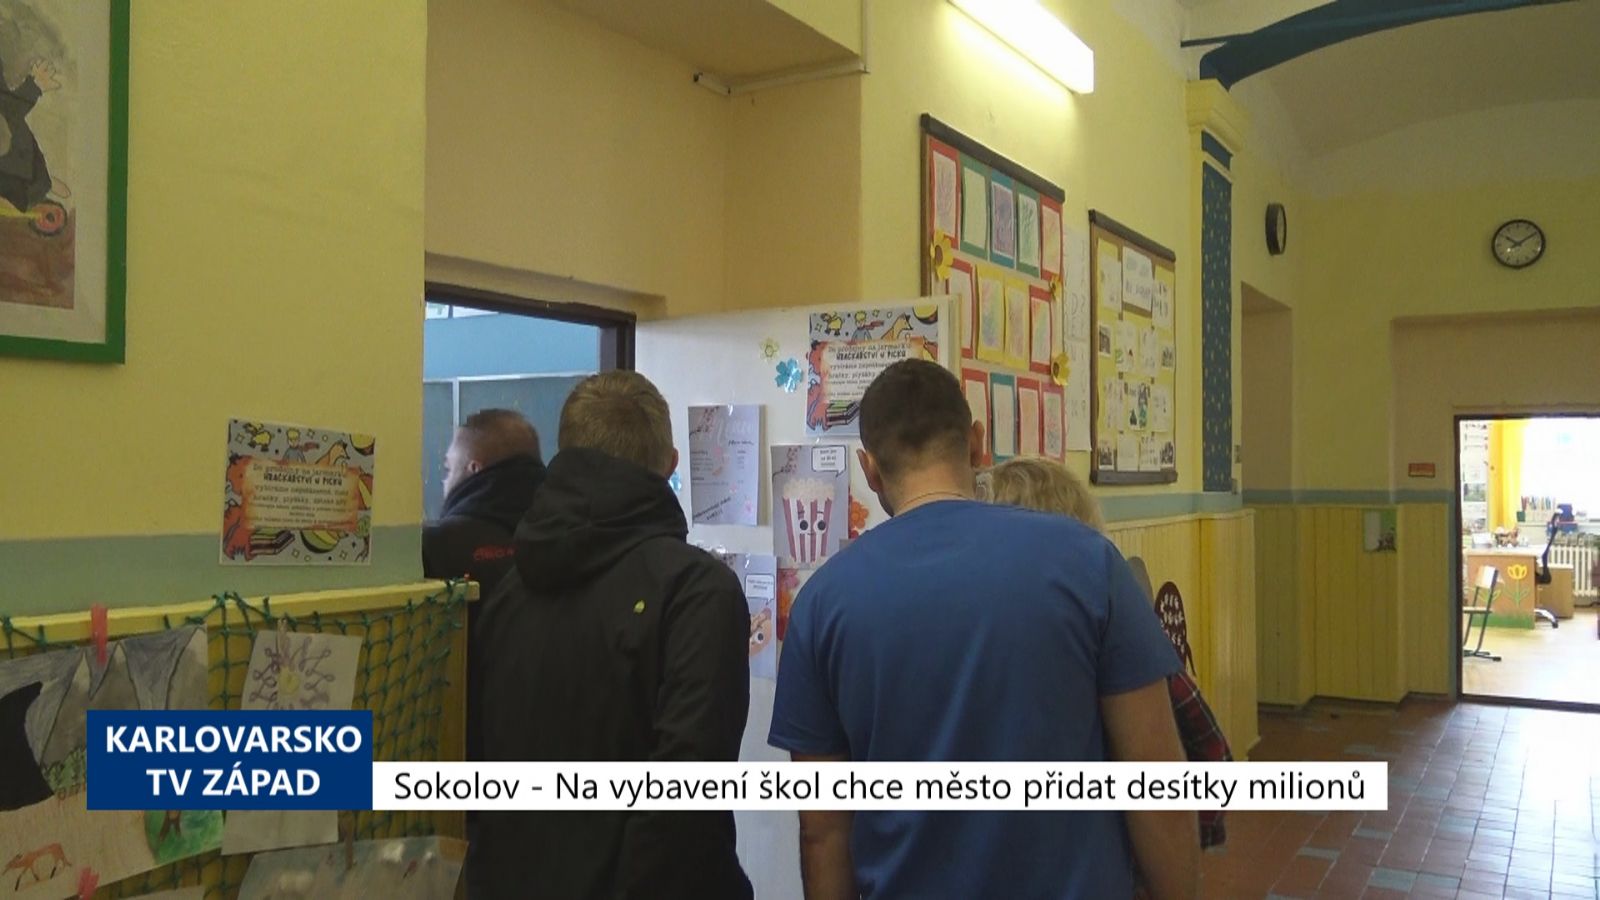 Sokolov: Na vybavení škol chce město přidat desítky milionů (TV Západ)